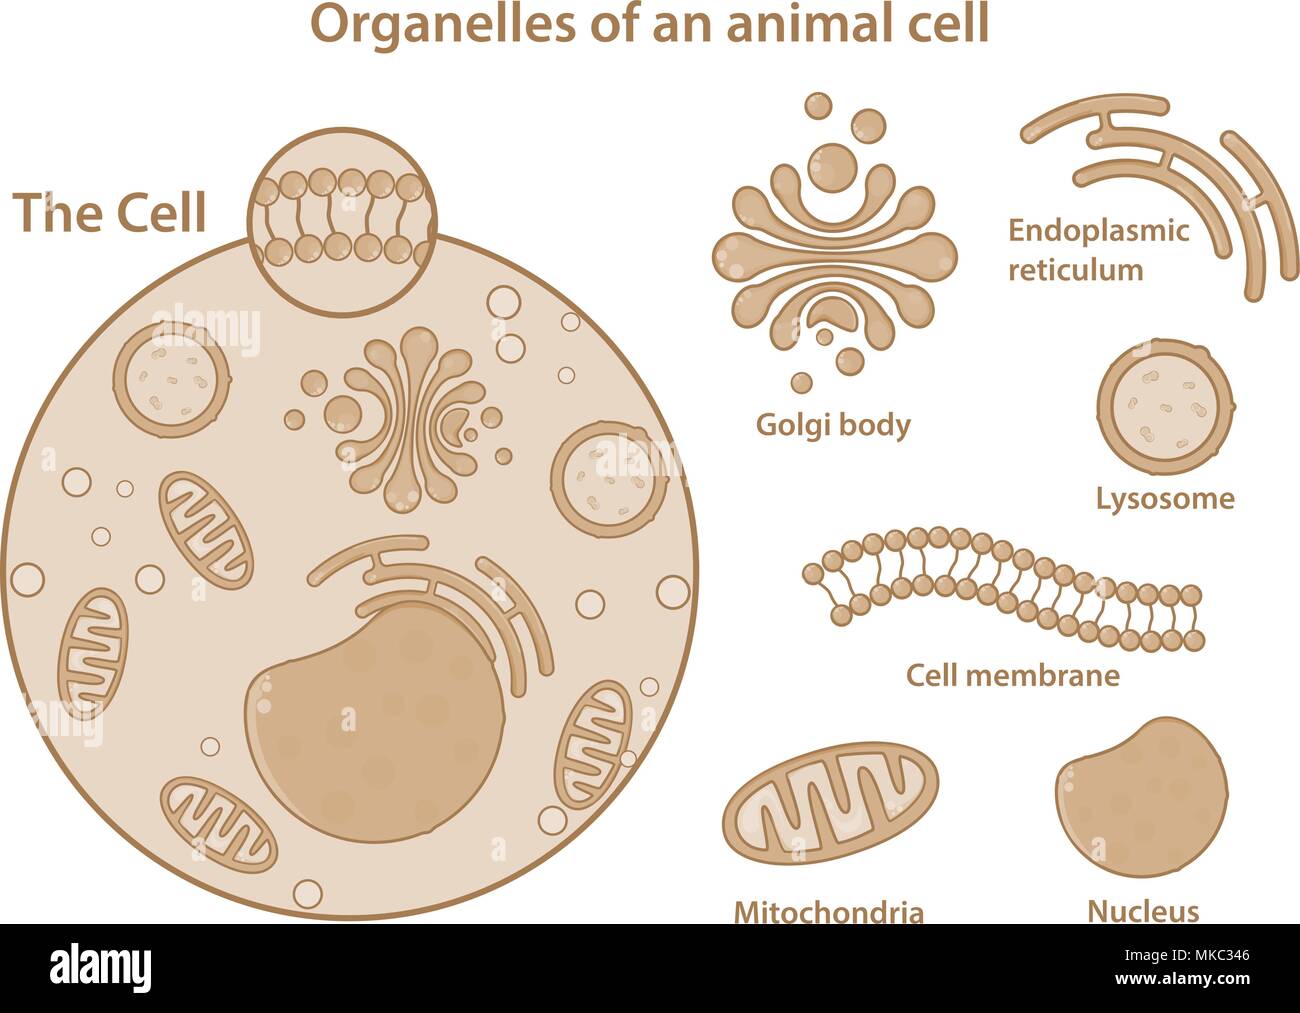 Organuli e i componenti principali di una cellula animale. Illustrazione Vettoriale